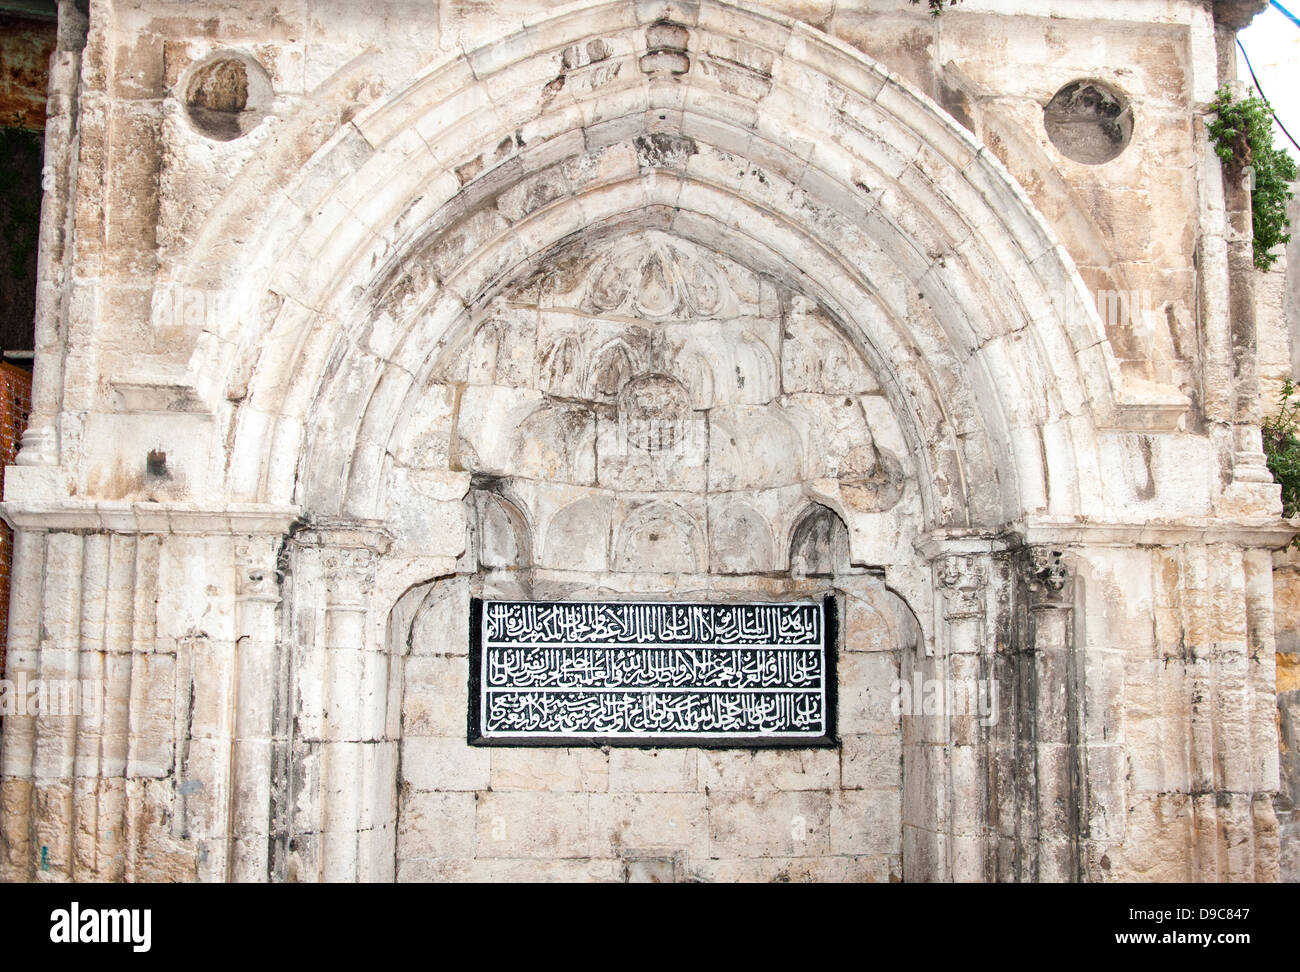 Dettagli architettonici di un archade con iscrizione araba nella città vecchia di Gerusalemme. Foto Stock